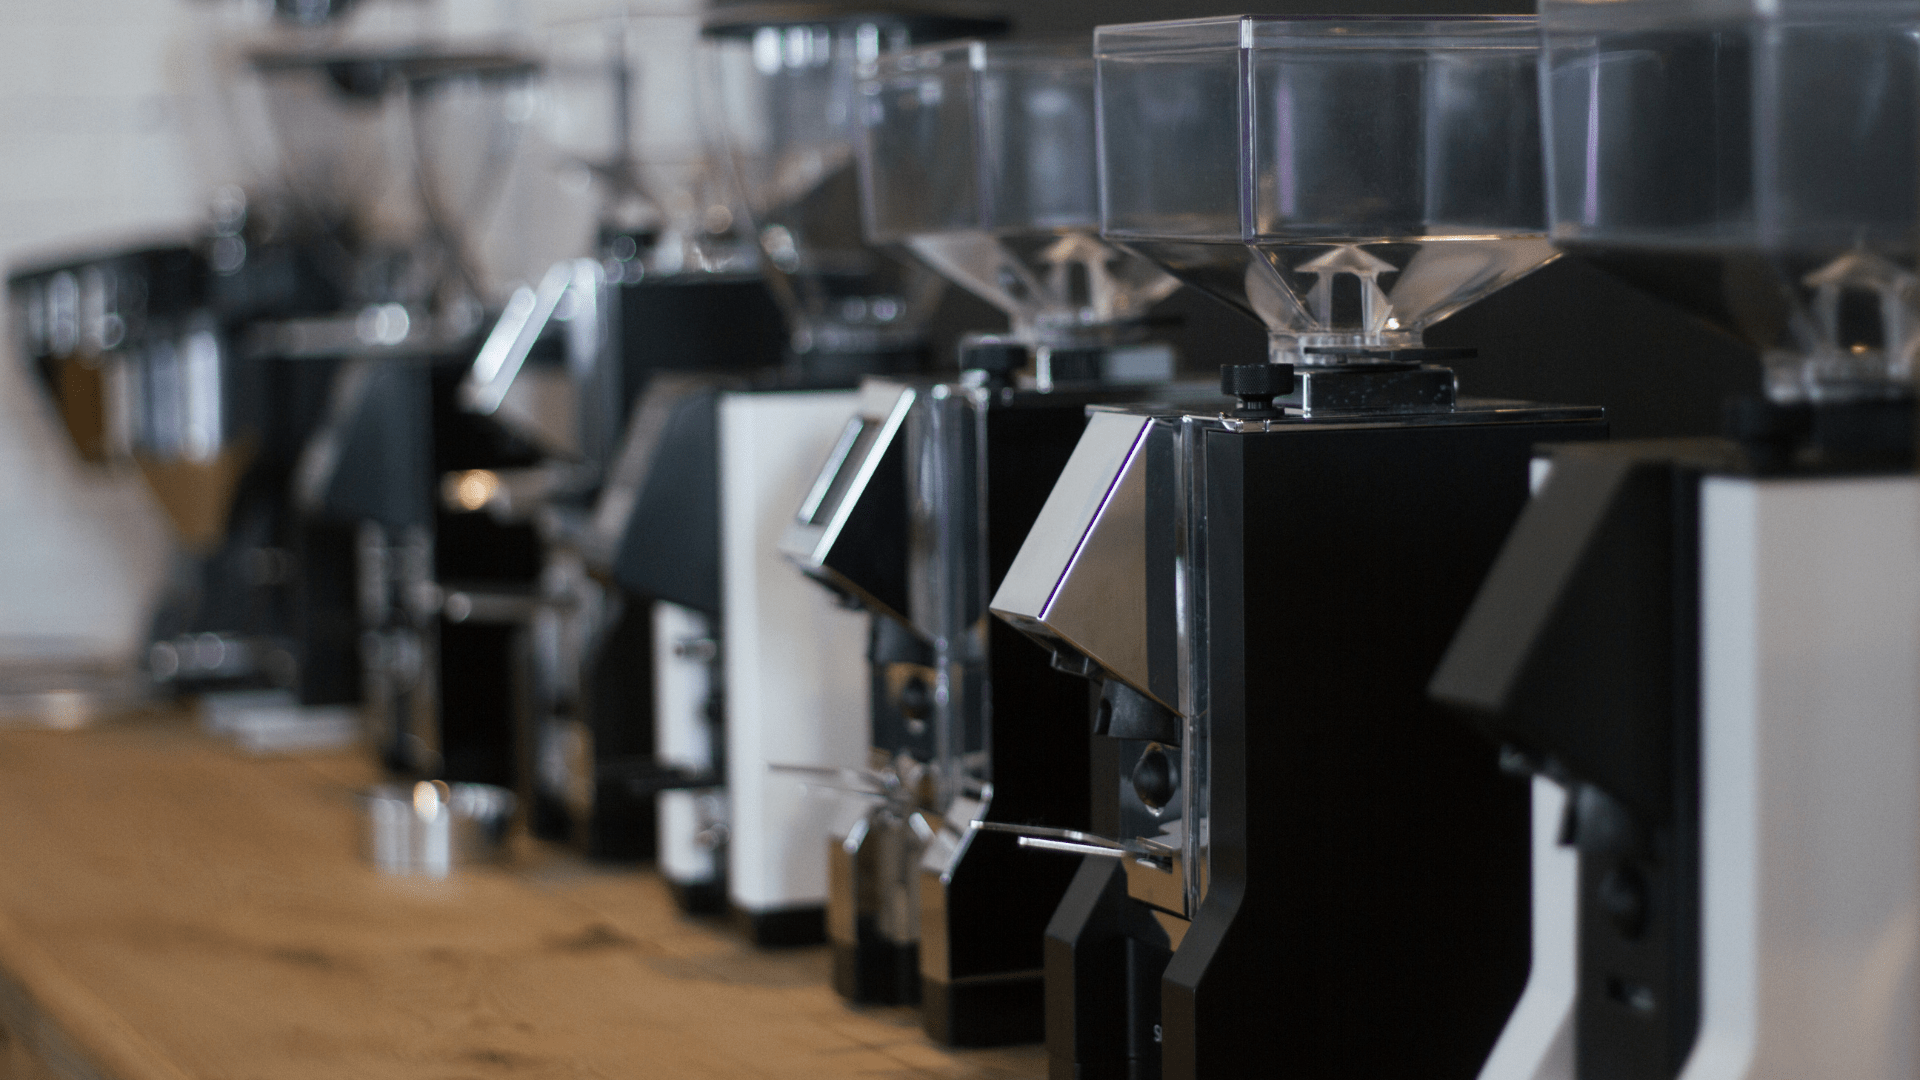 Les accessoires pour utiliser votre machine à café comme un pro